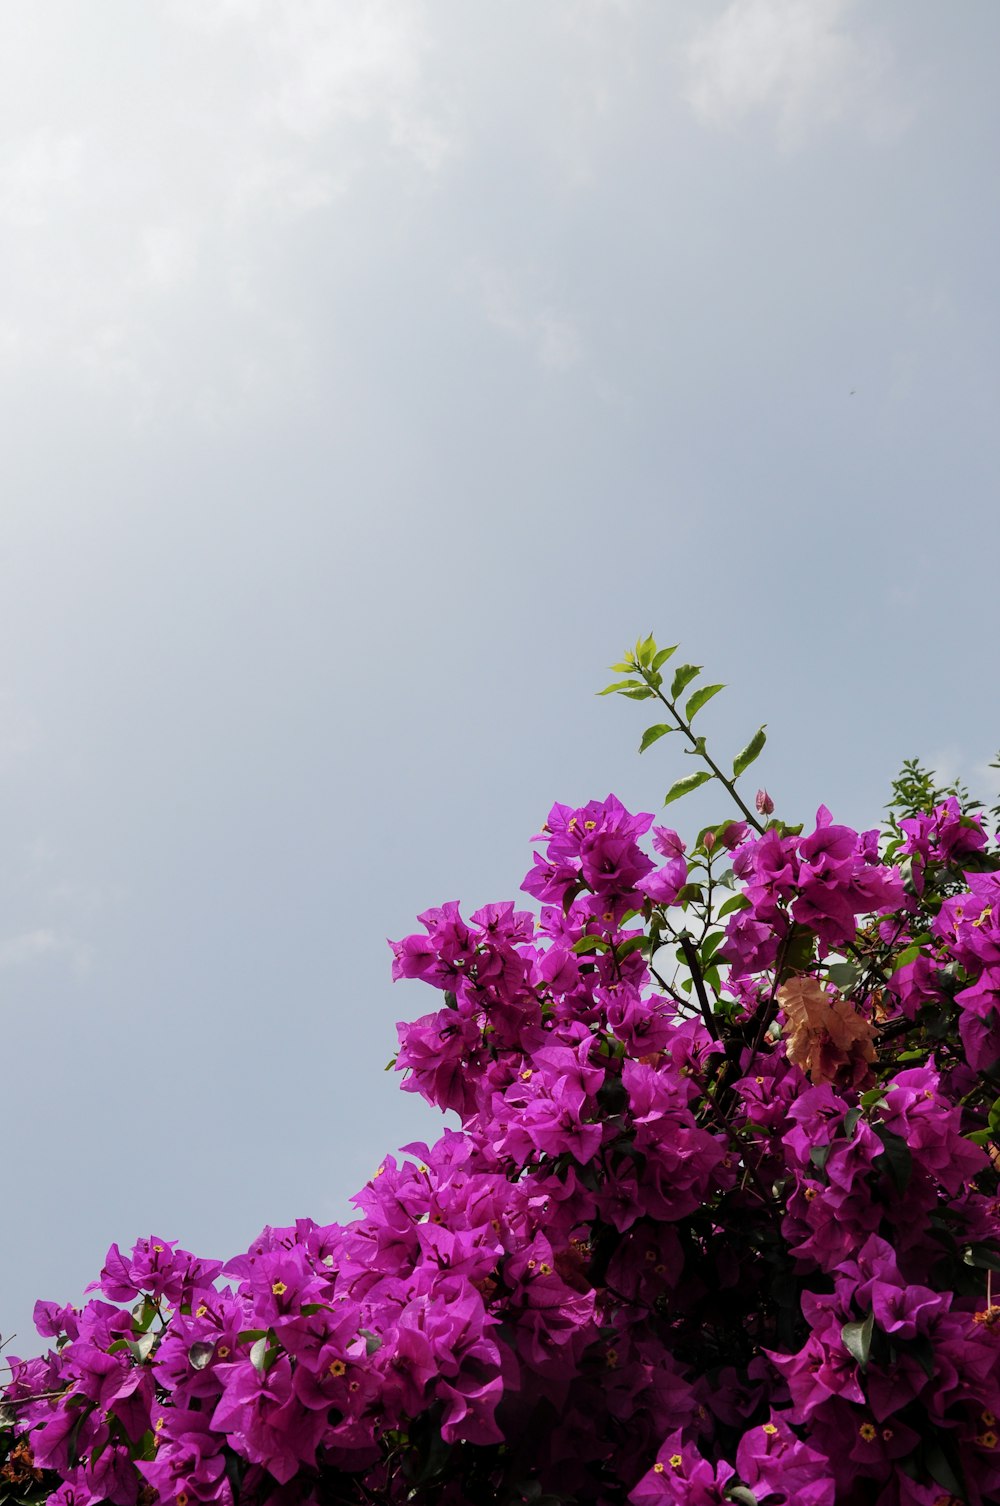 fiori viola che sbocciano su un albero contro un cielo blu